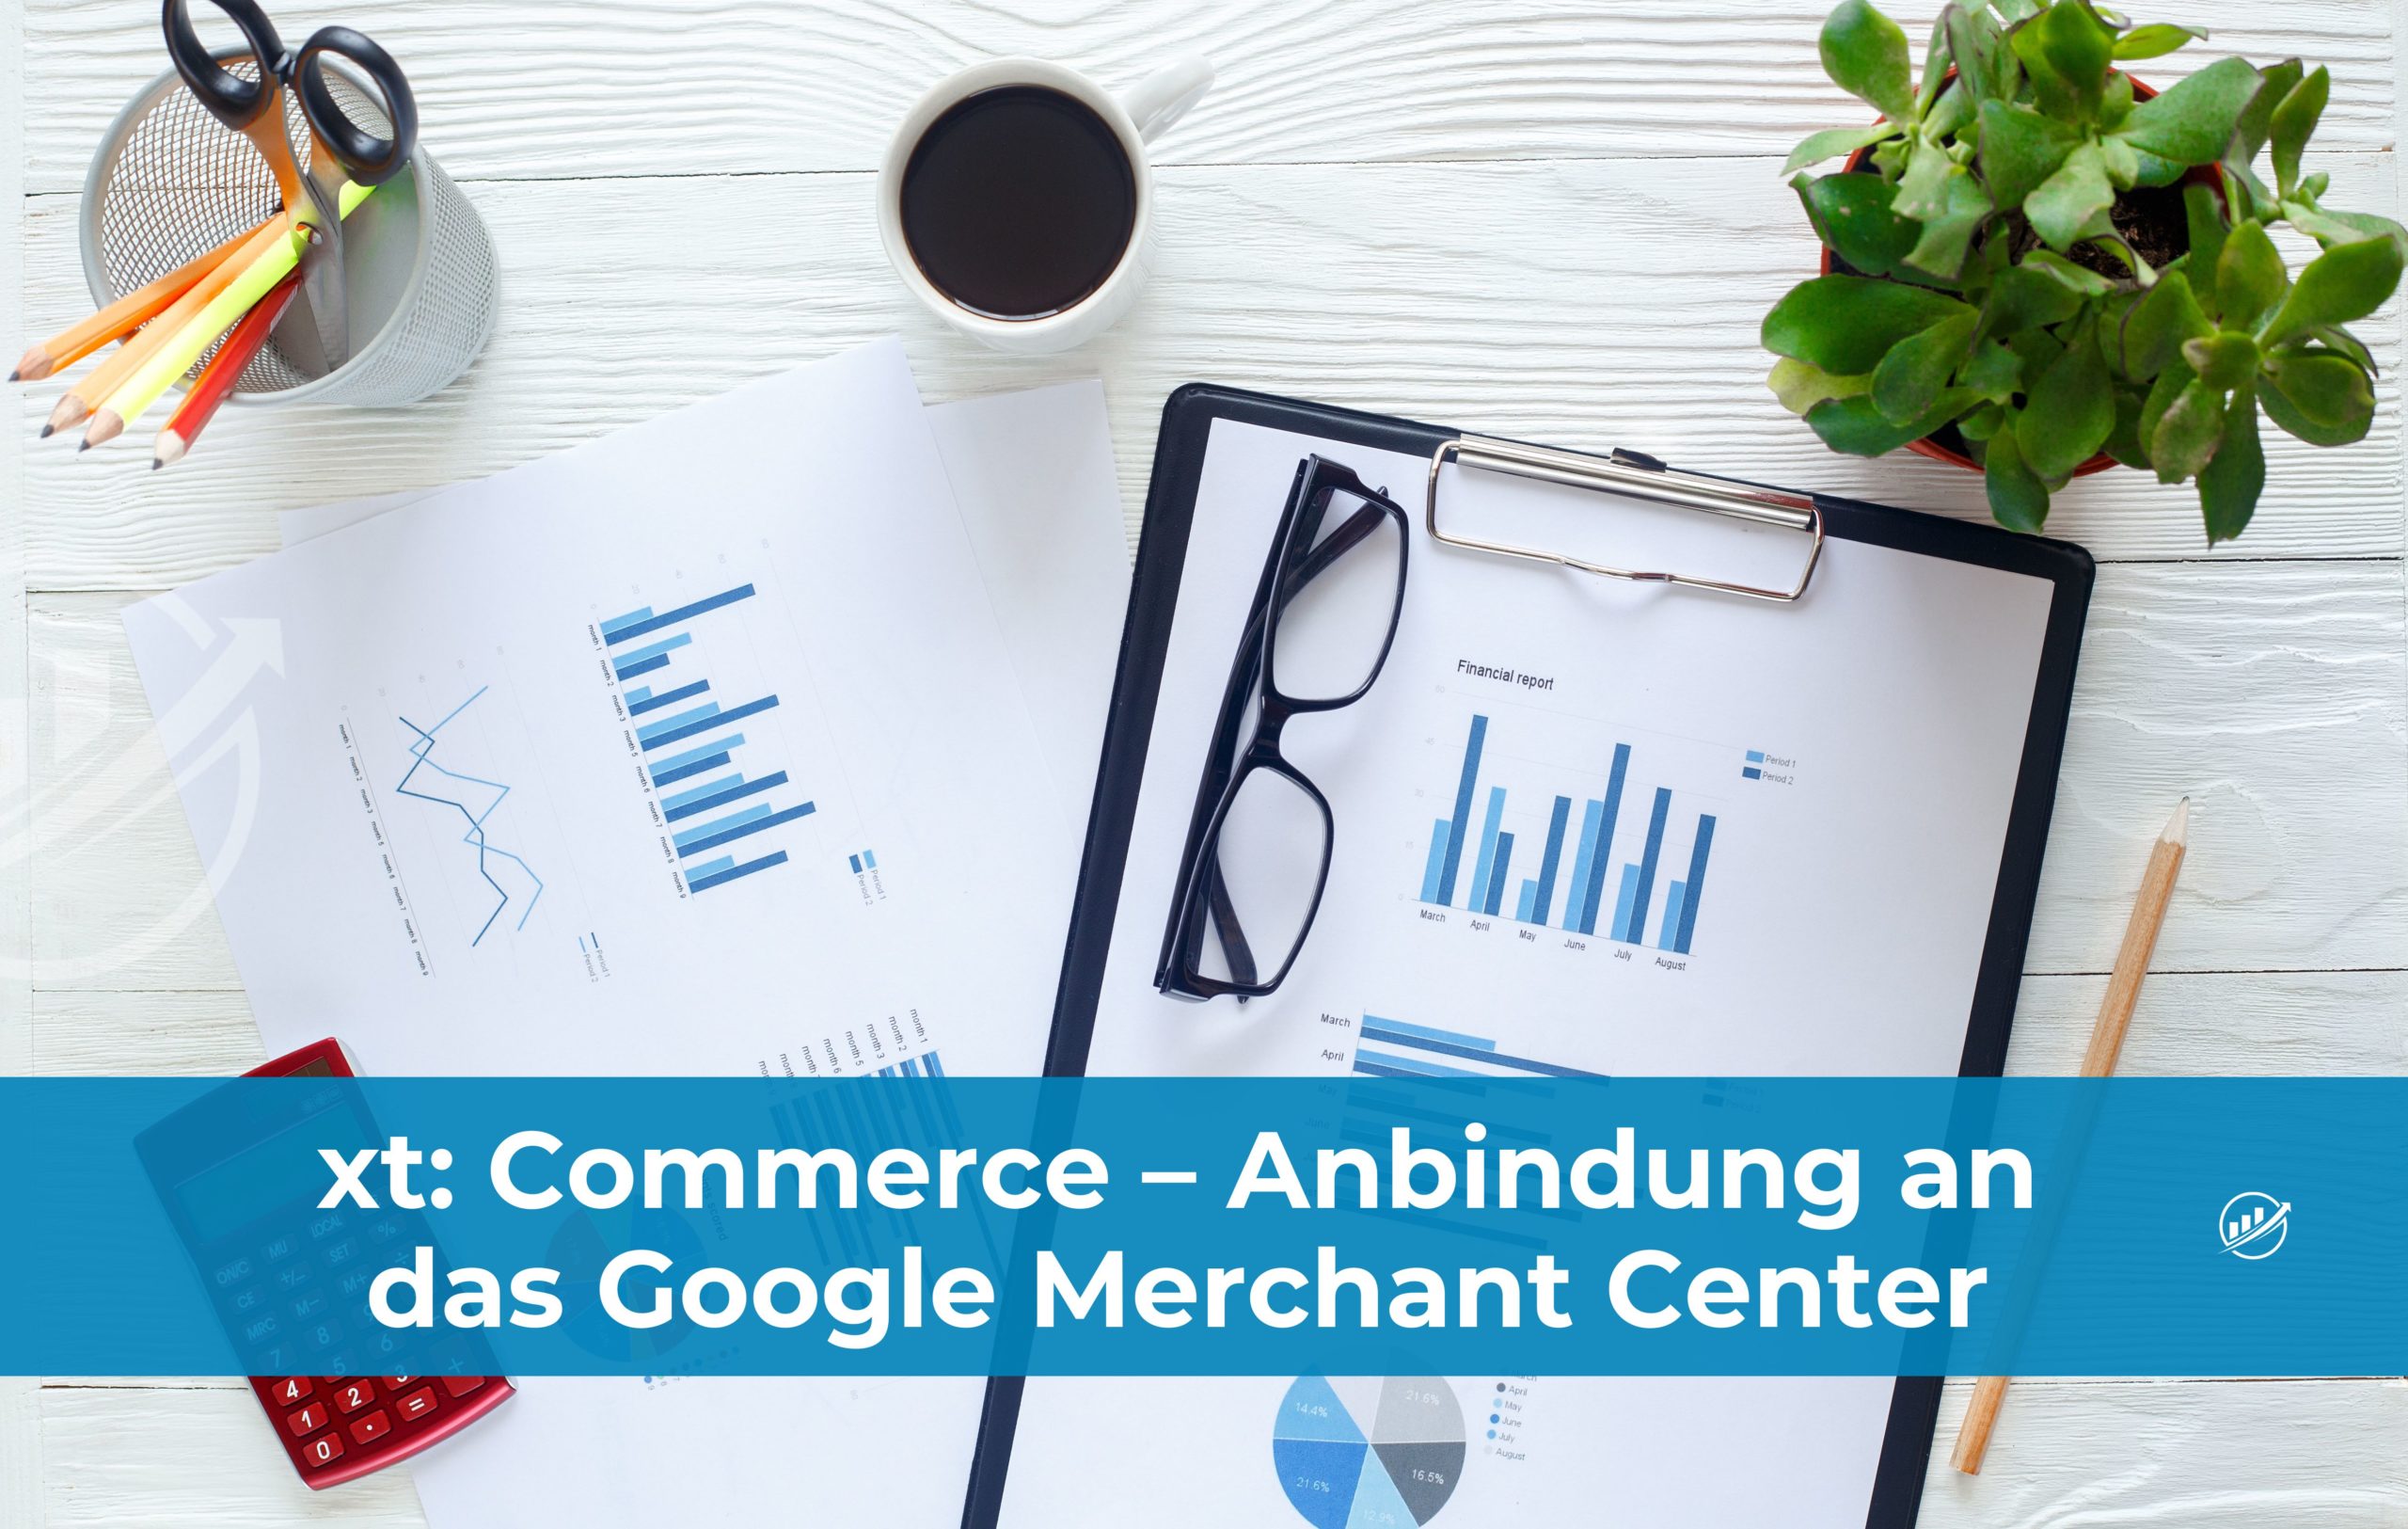 xt: Commerce – Anbindung an das Google Merchant Center